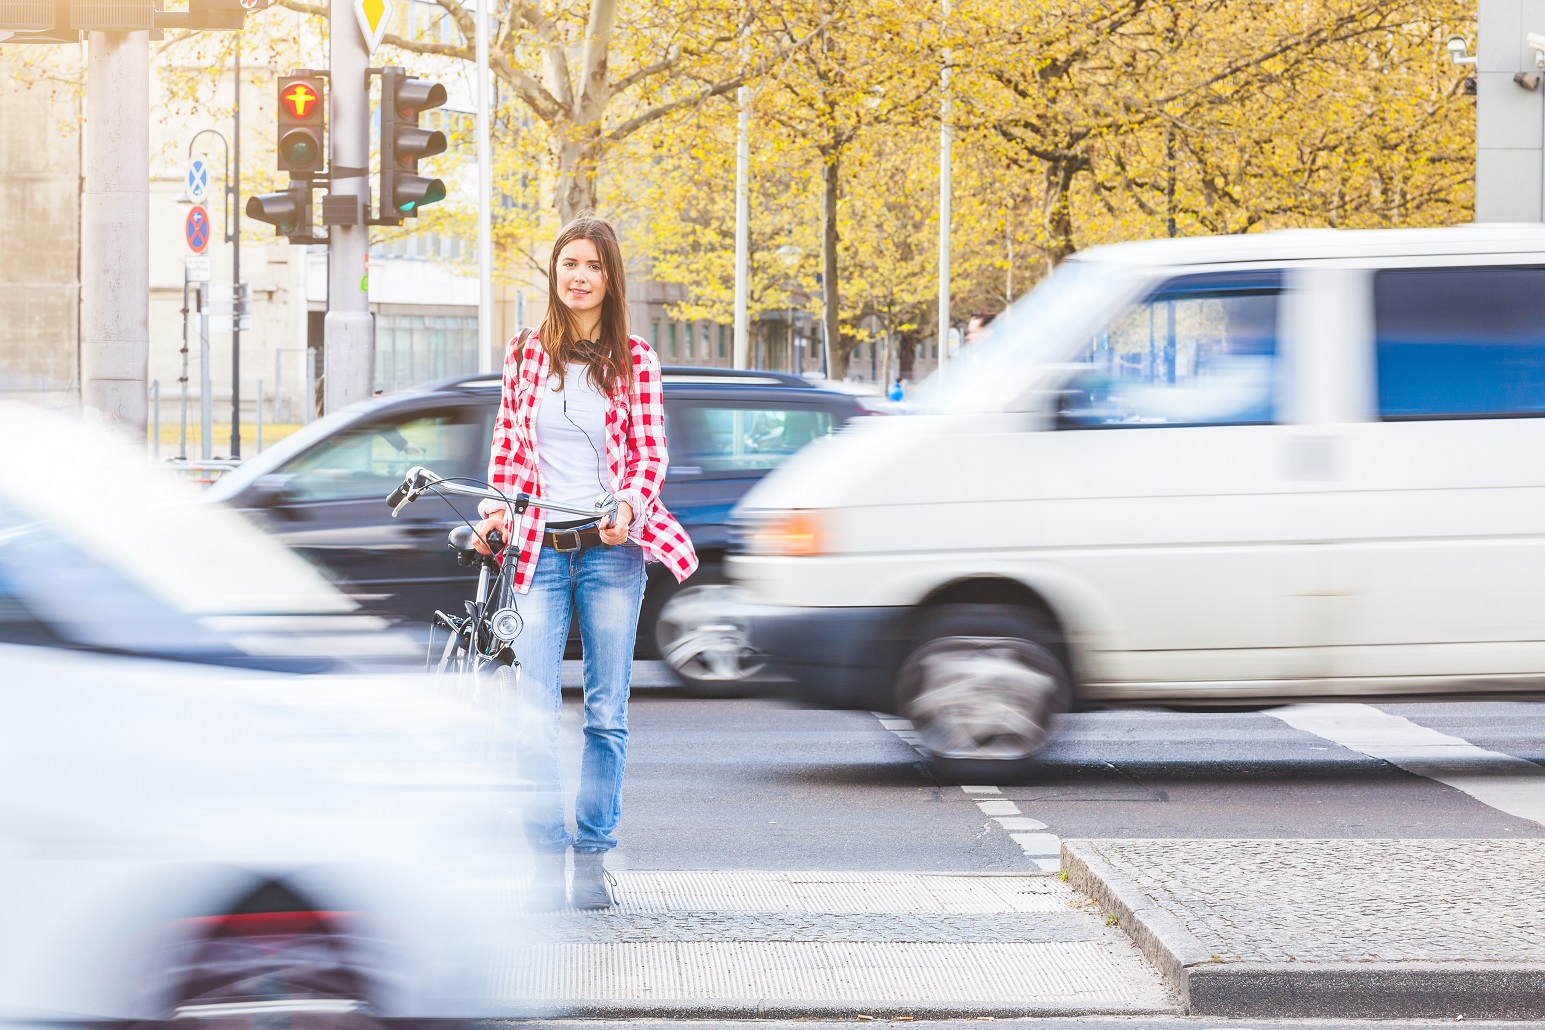 eine junge Frau wartet, ein Fahrrad schiebend, auf einer Mittelinsel an einer roten Ampel, vor und hinter ihr fahren Autos vorbei